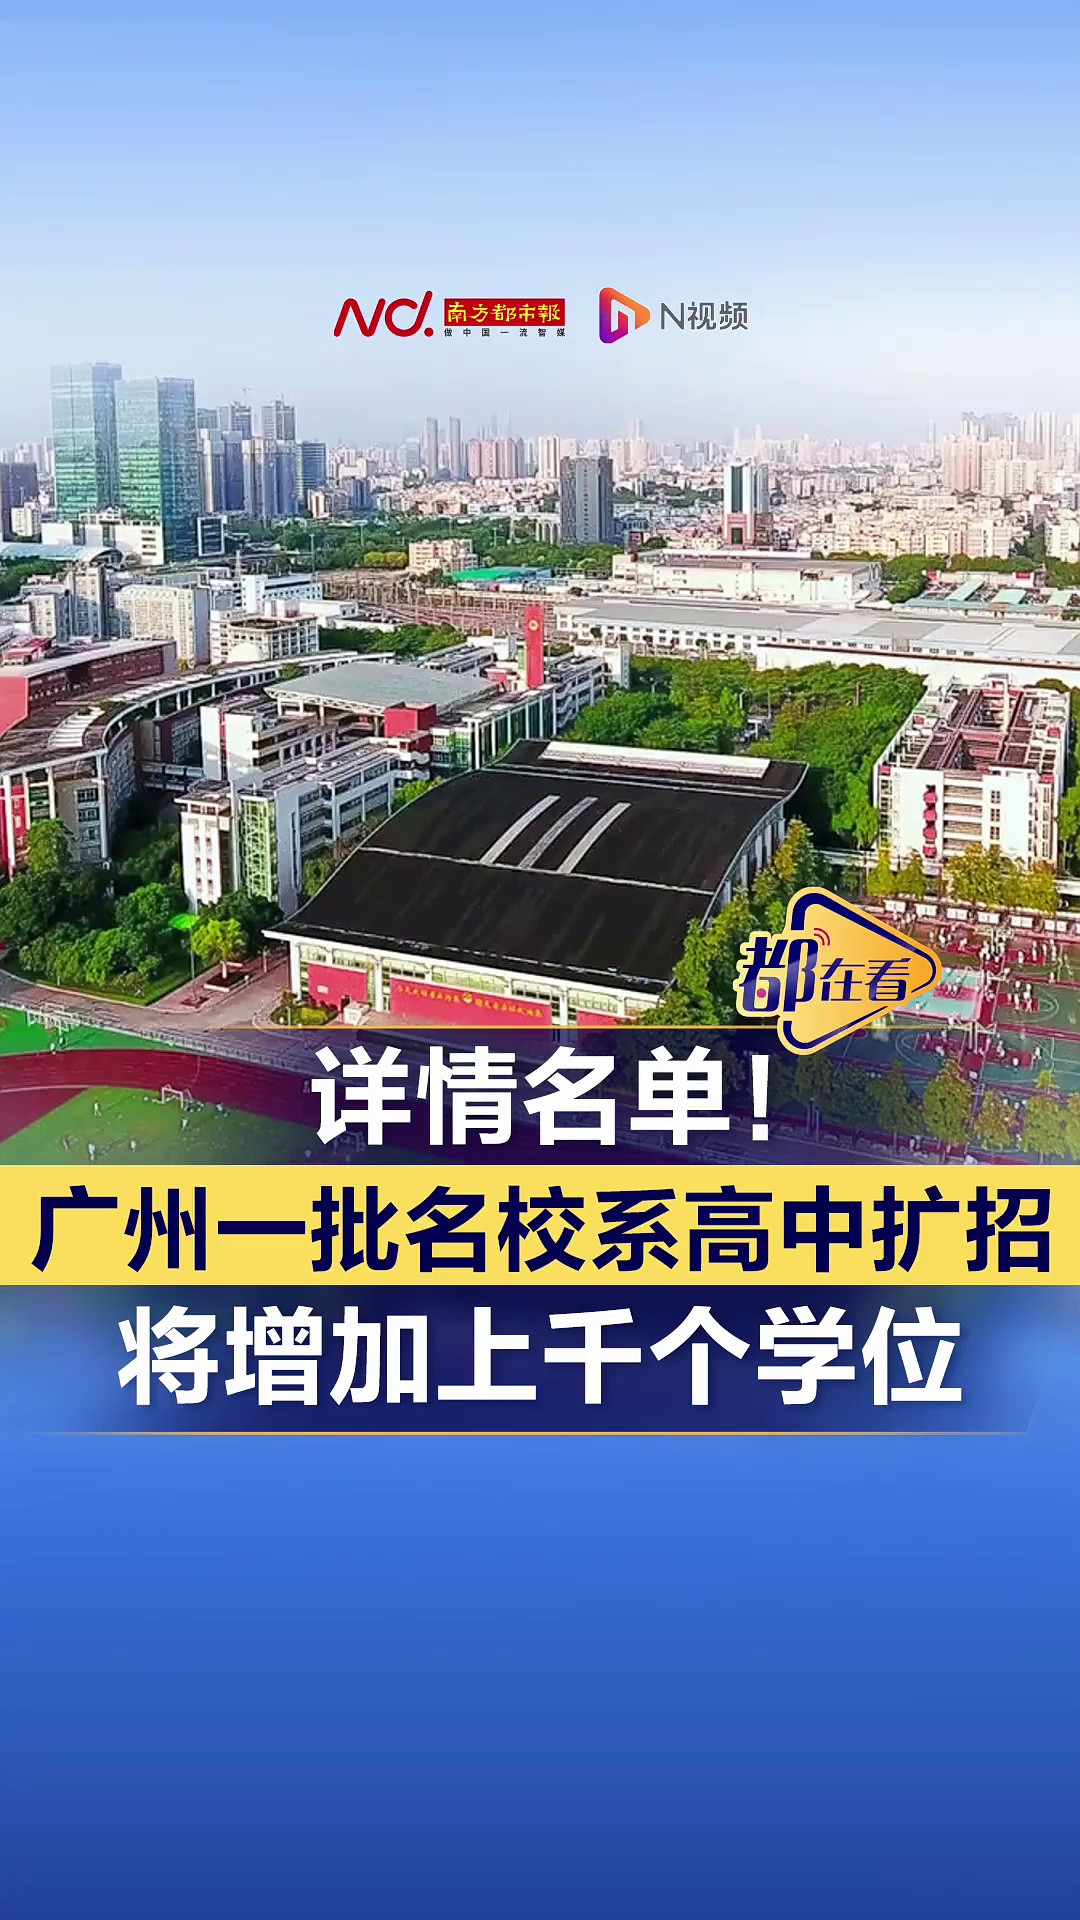 详情名单! 广州一批名校系高中扩招, 将增加上千个学位